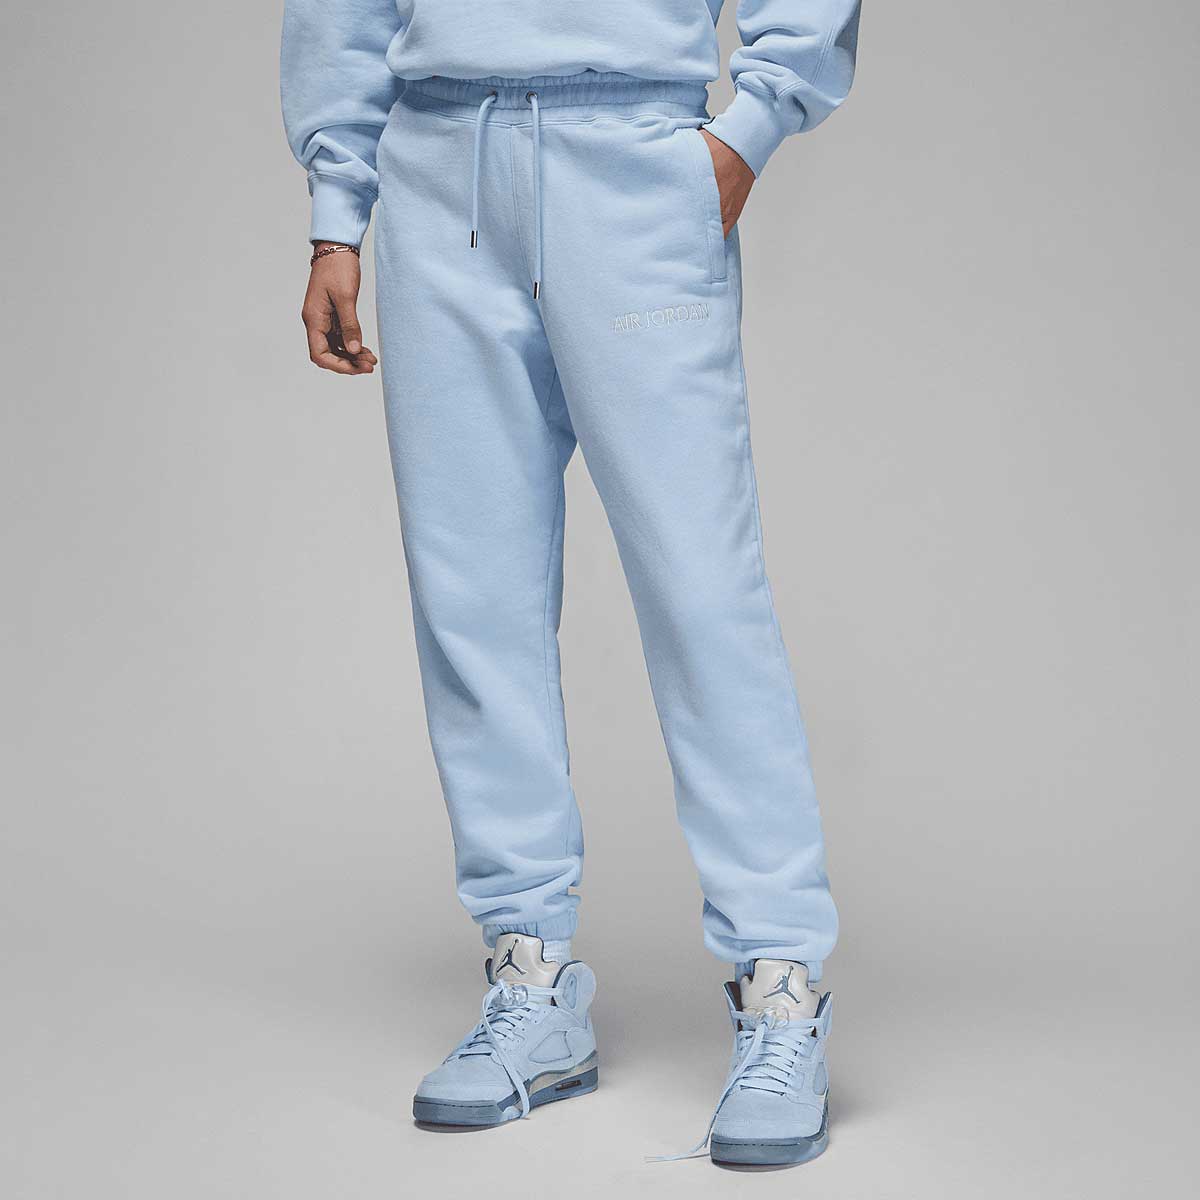 Jordan Air Jordan X Wordmark Pants, Ice Blue/Sail